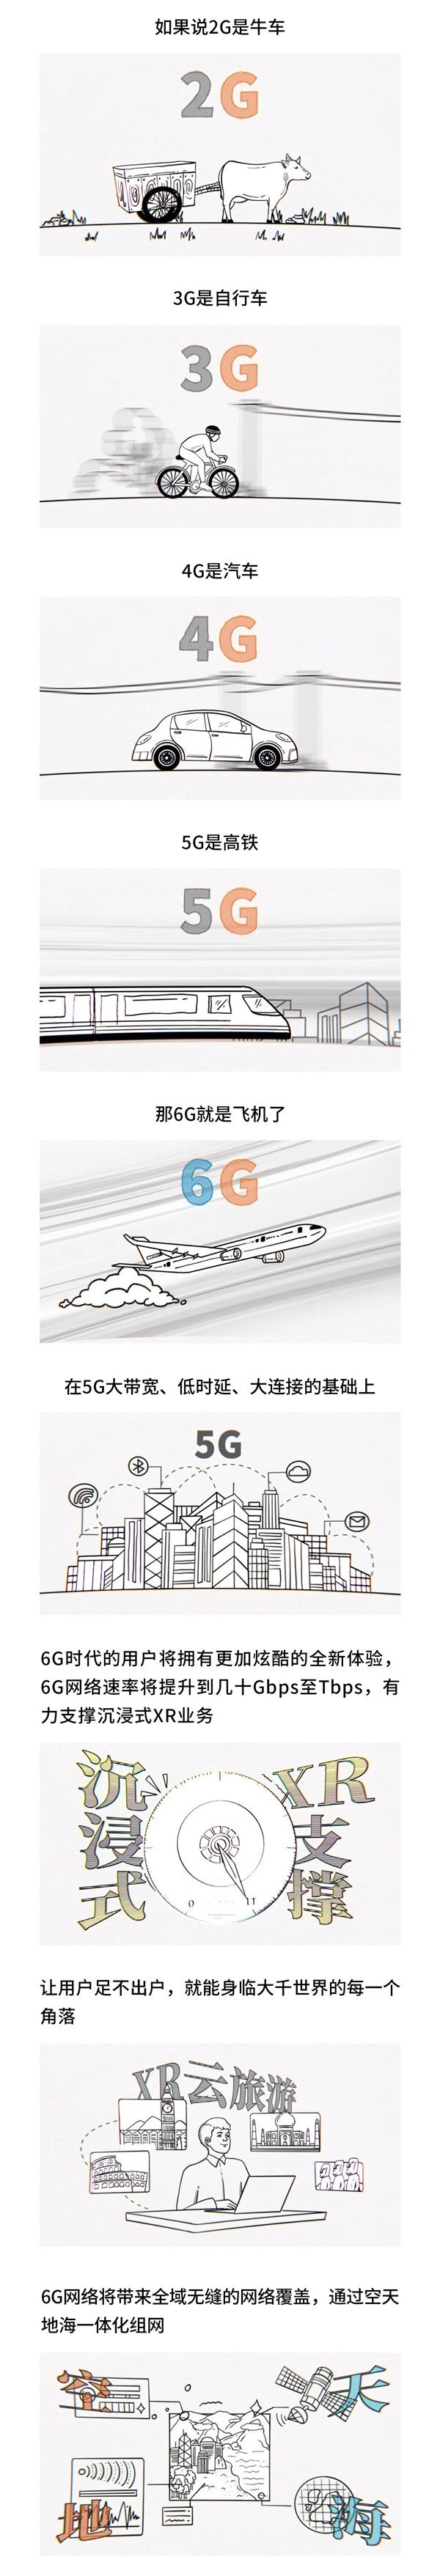 网速有多快!5G是高铁,6G就是飞机